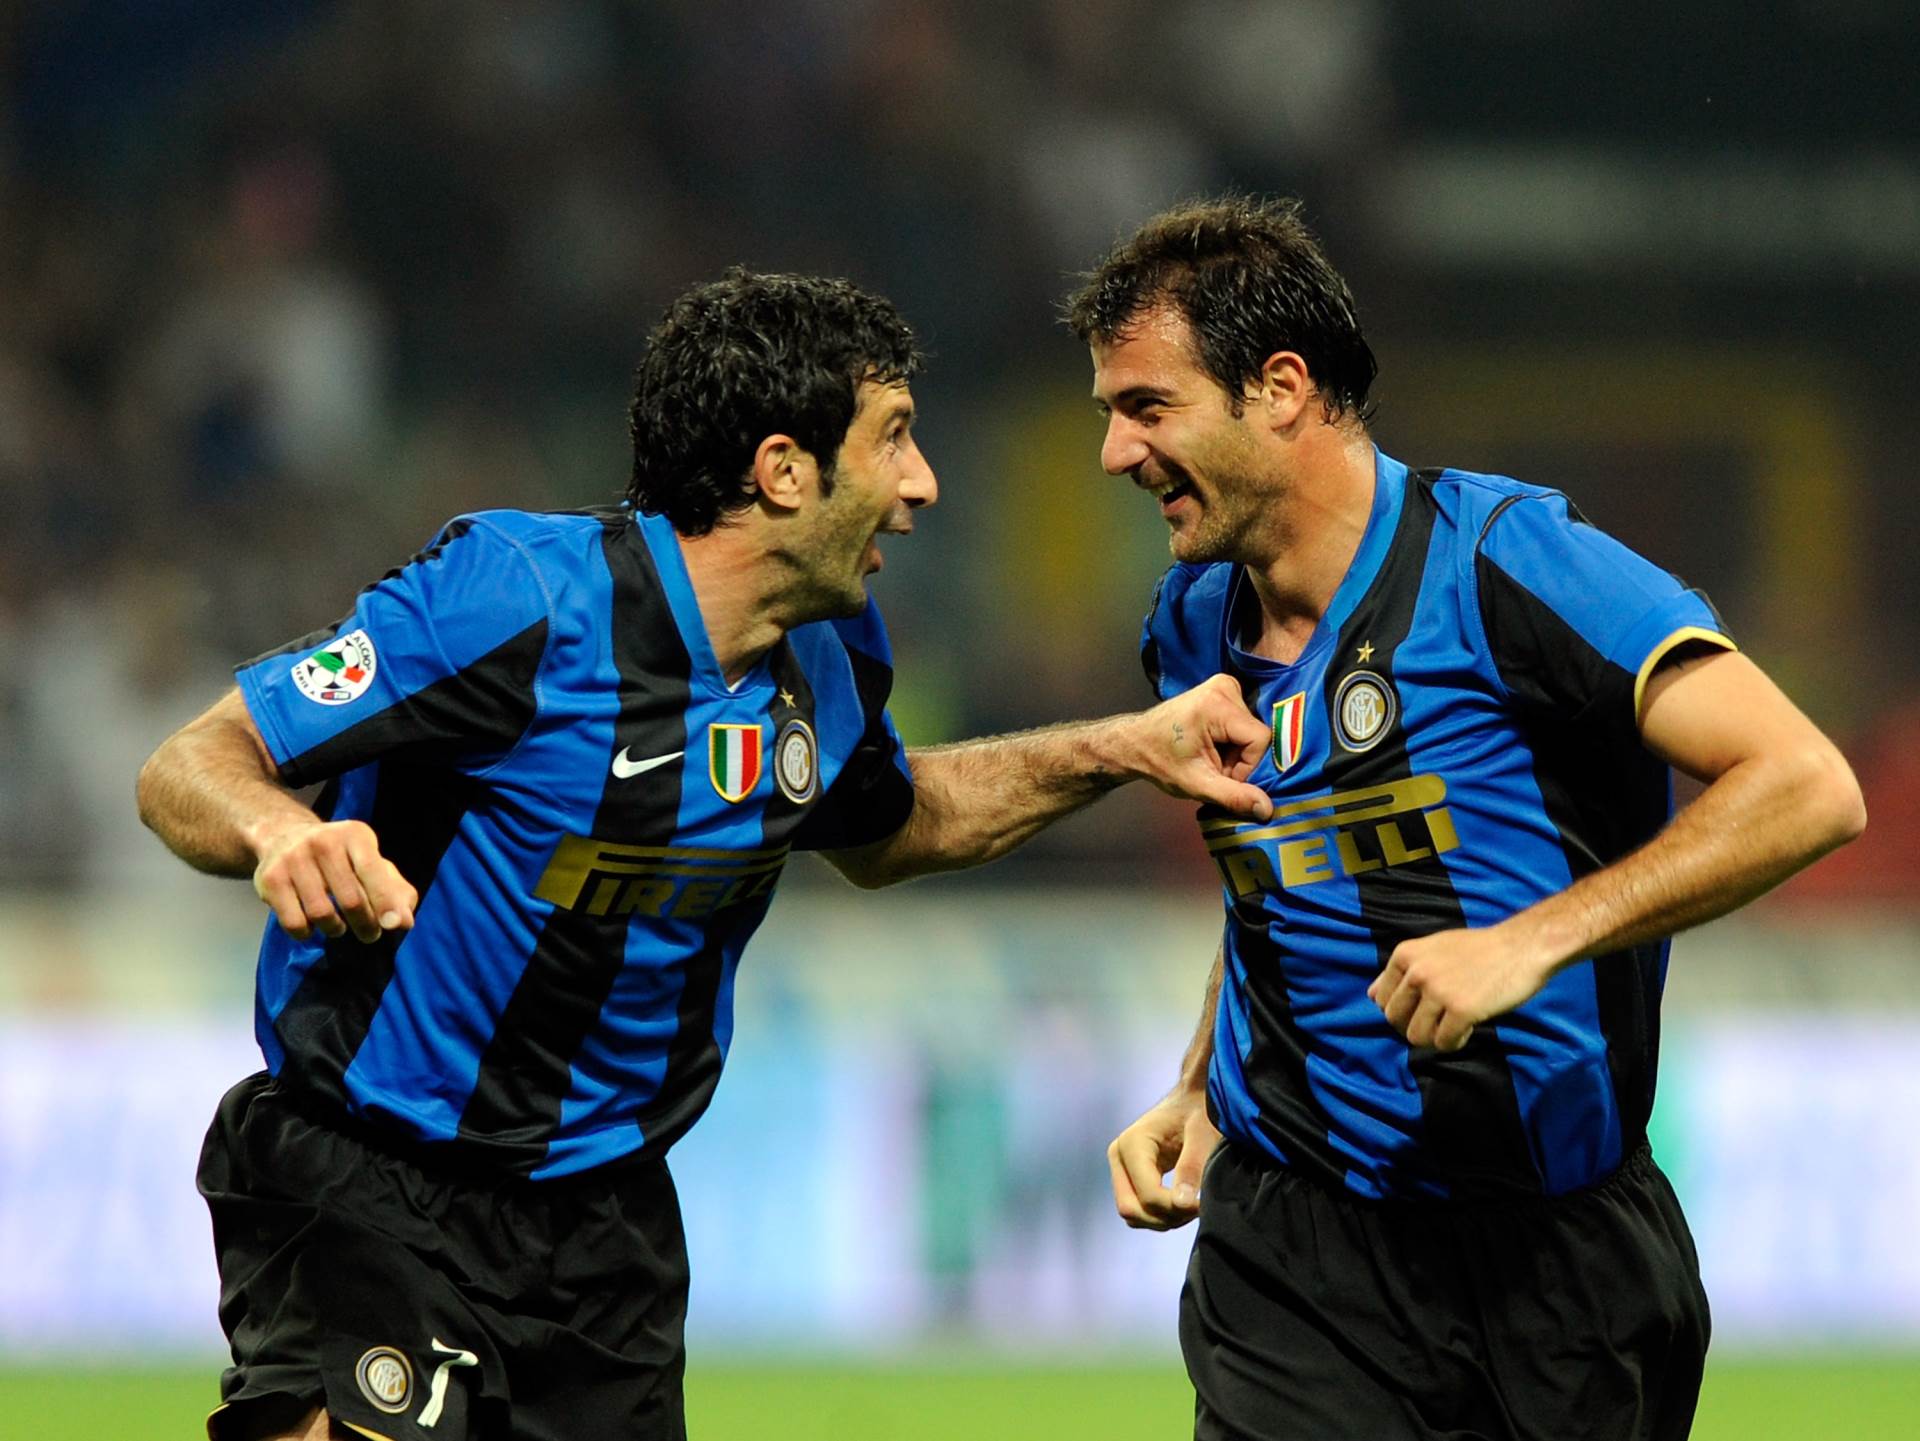  Luis-Figo-izjava-Roberto-Mancini-me-je-ponizavao-u-Interu 